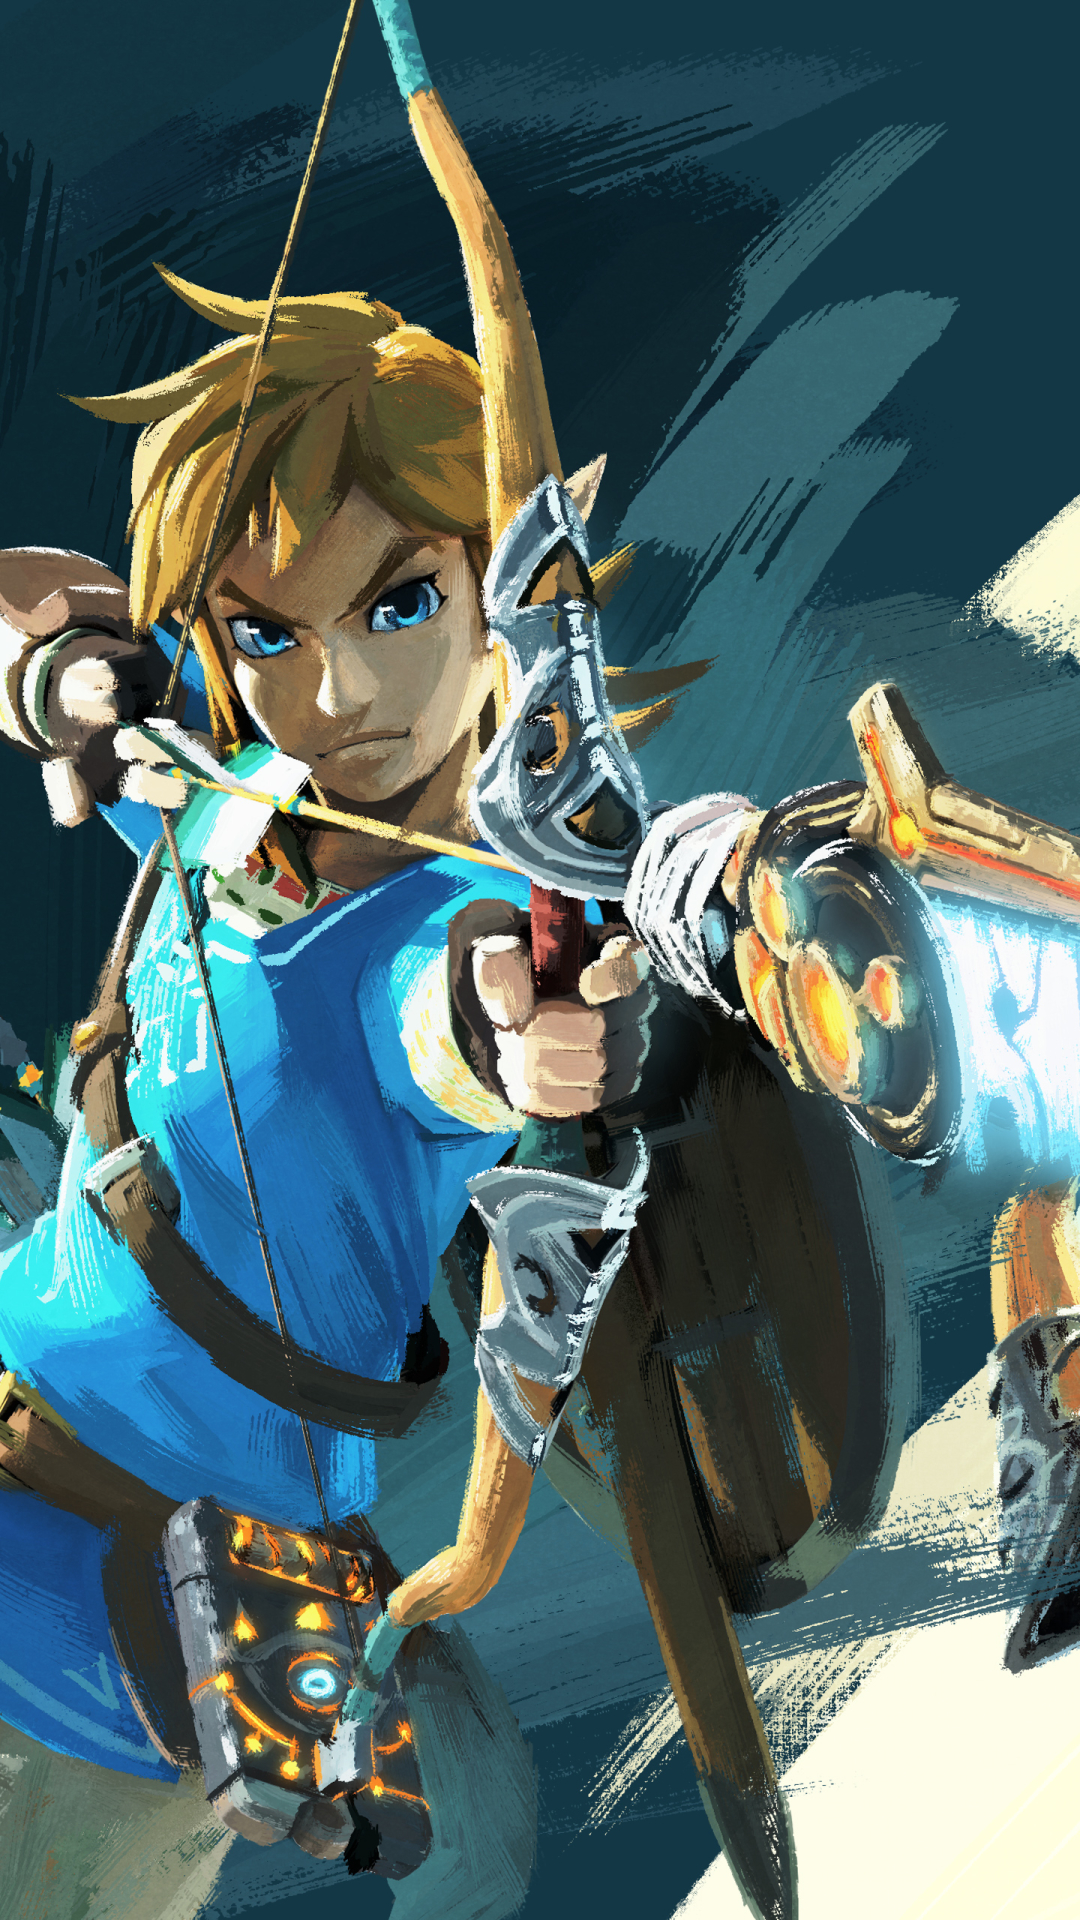 Legend of Zelda: Breath of the Wild iPhone wallpapers